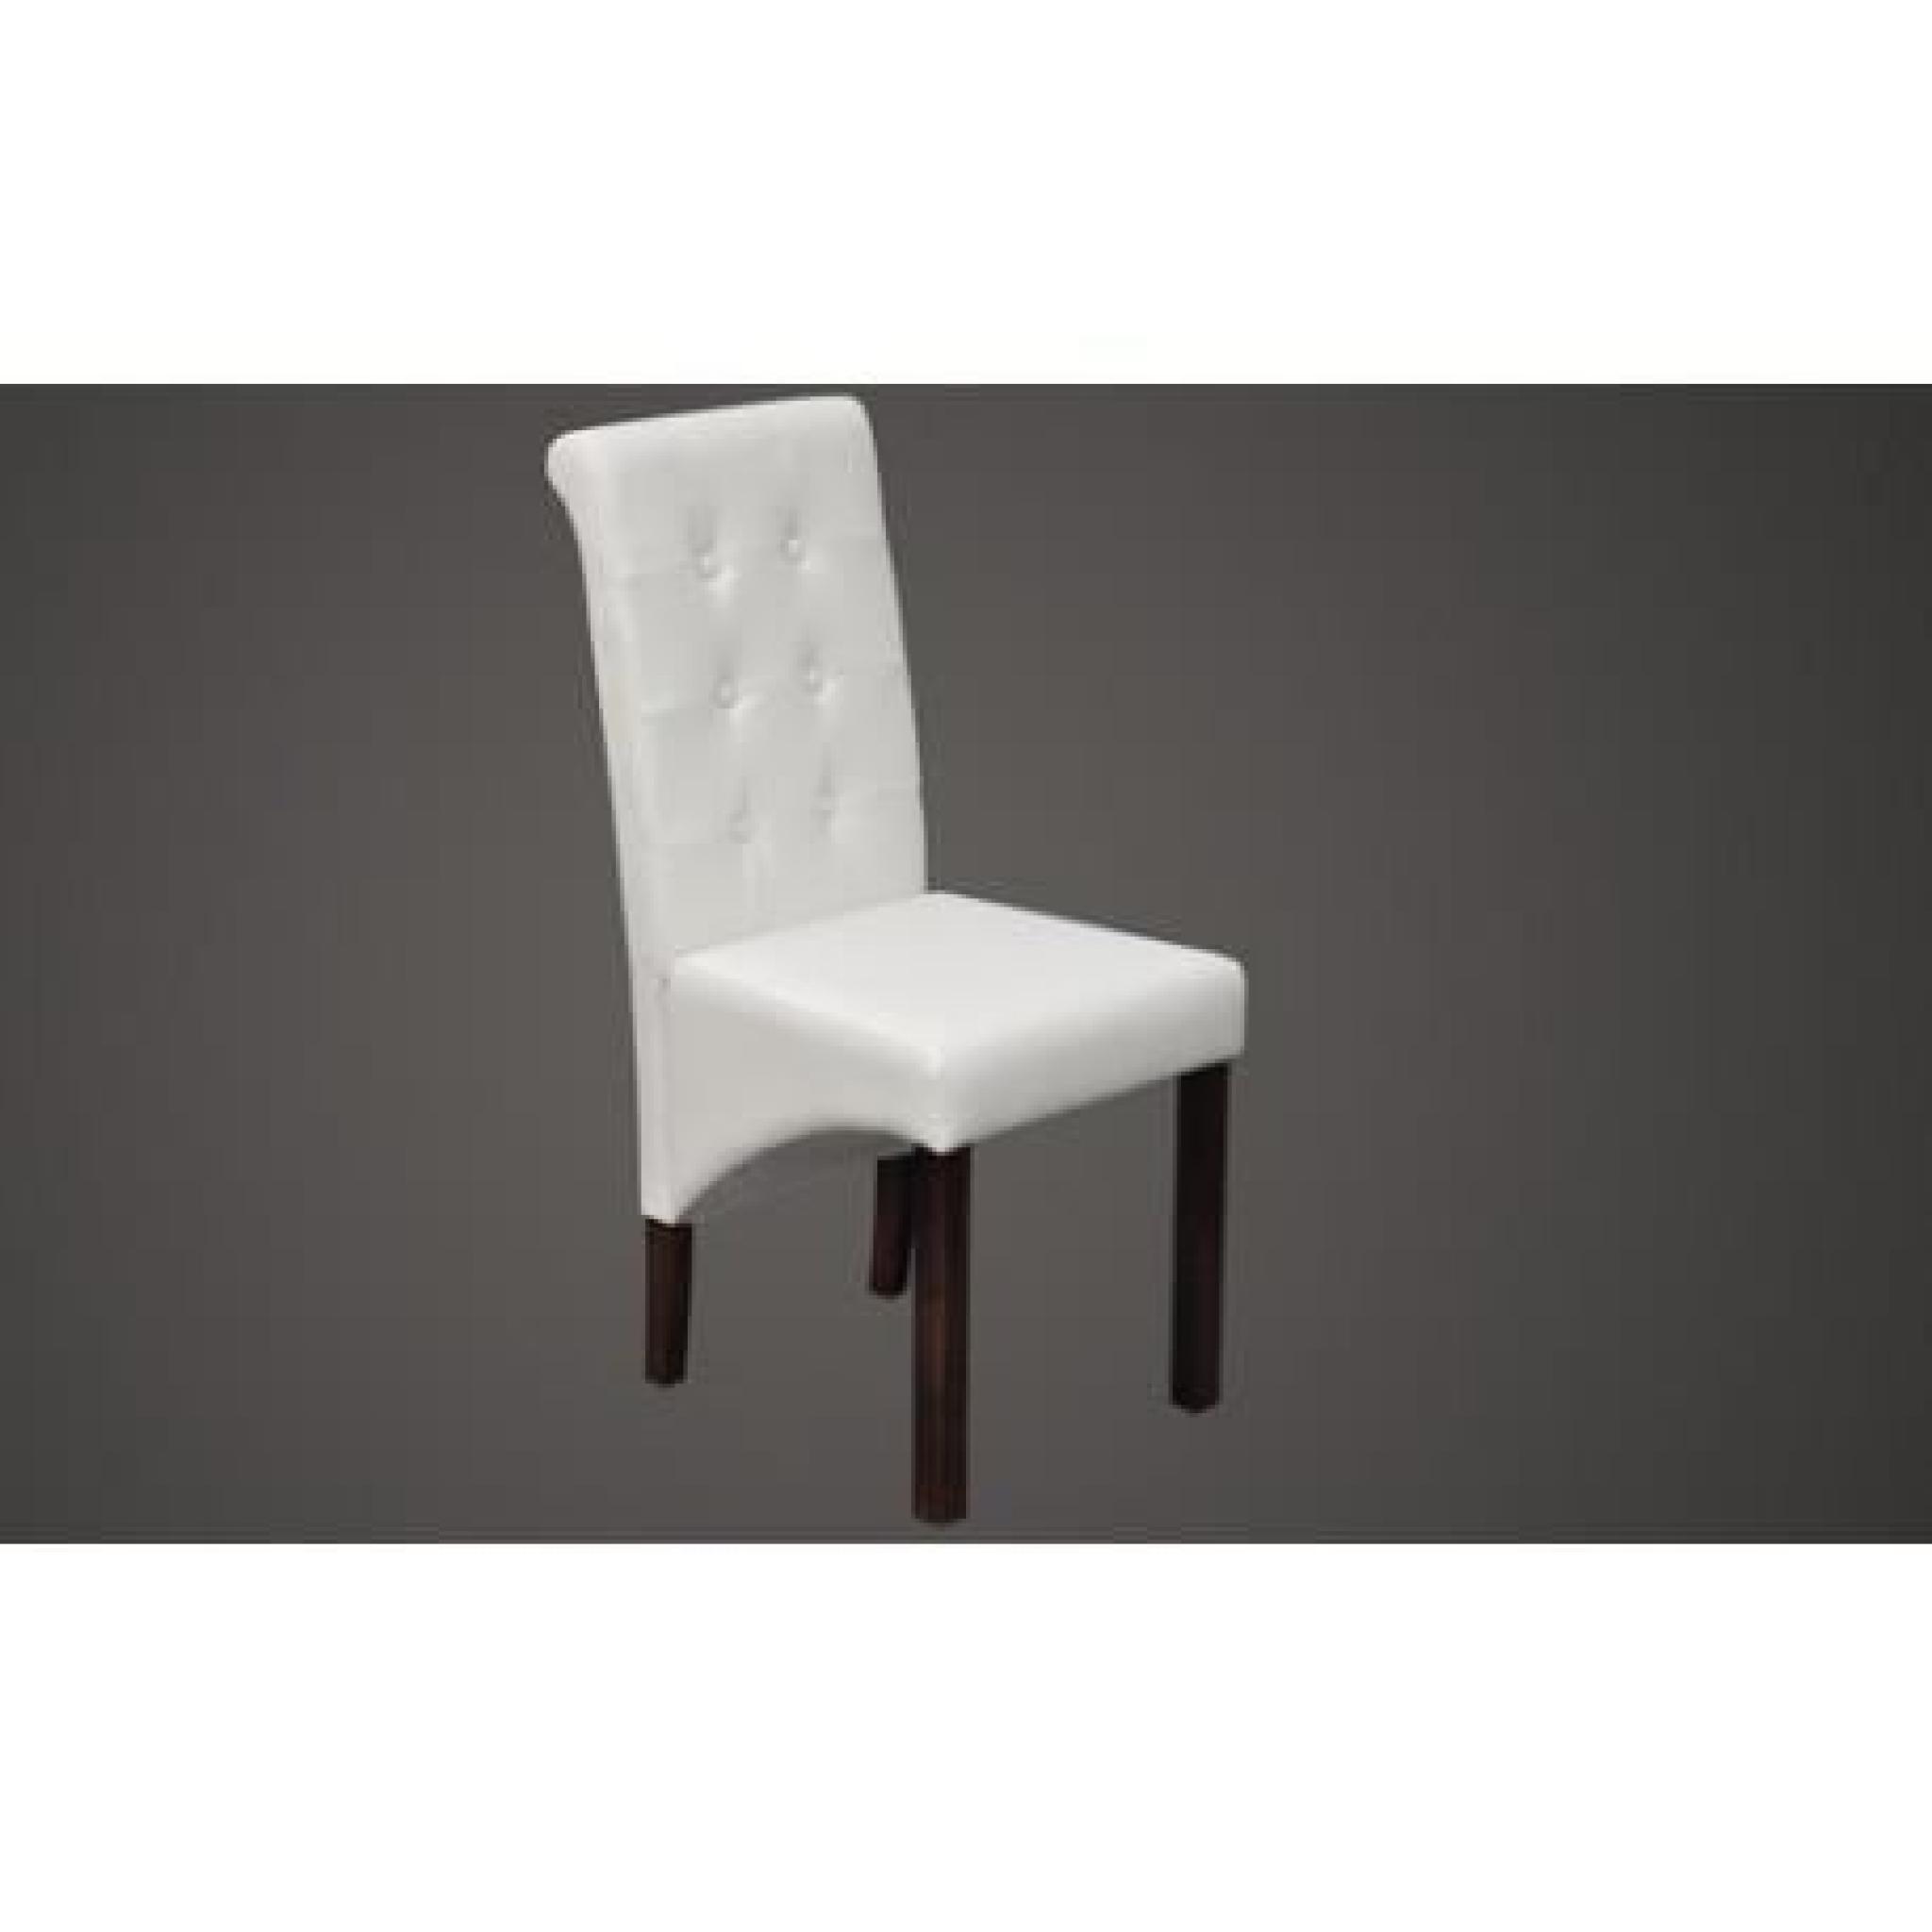 Lot de 2 chaises modernes (blanc) Maja+ pas cher